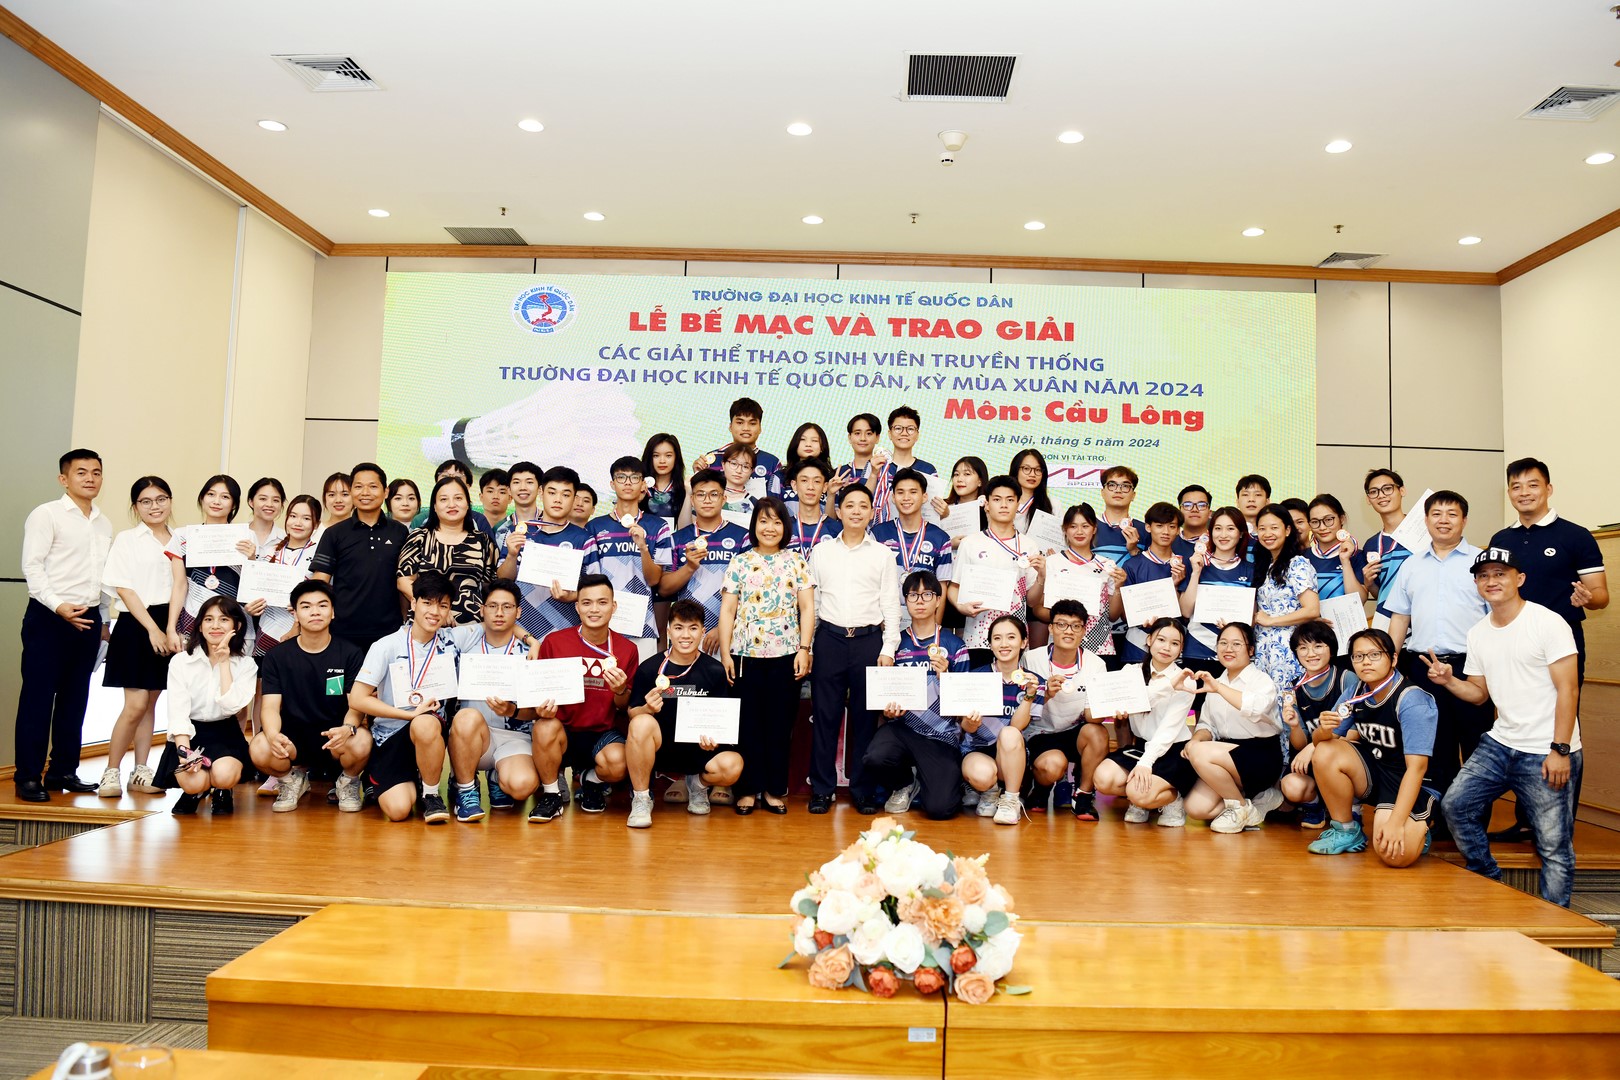 Bế mạc và trao giải các giải thể thao sinh viên truyền thống Trường Đại học Kinh tế Quốc dân kỳ mùa Xuân năm 2024